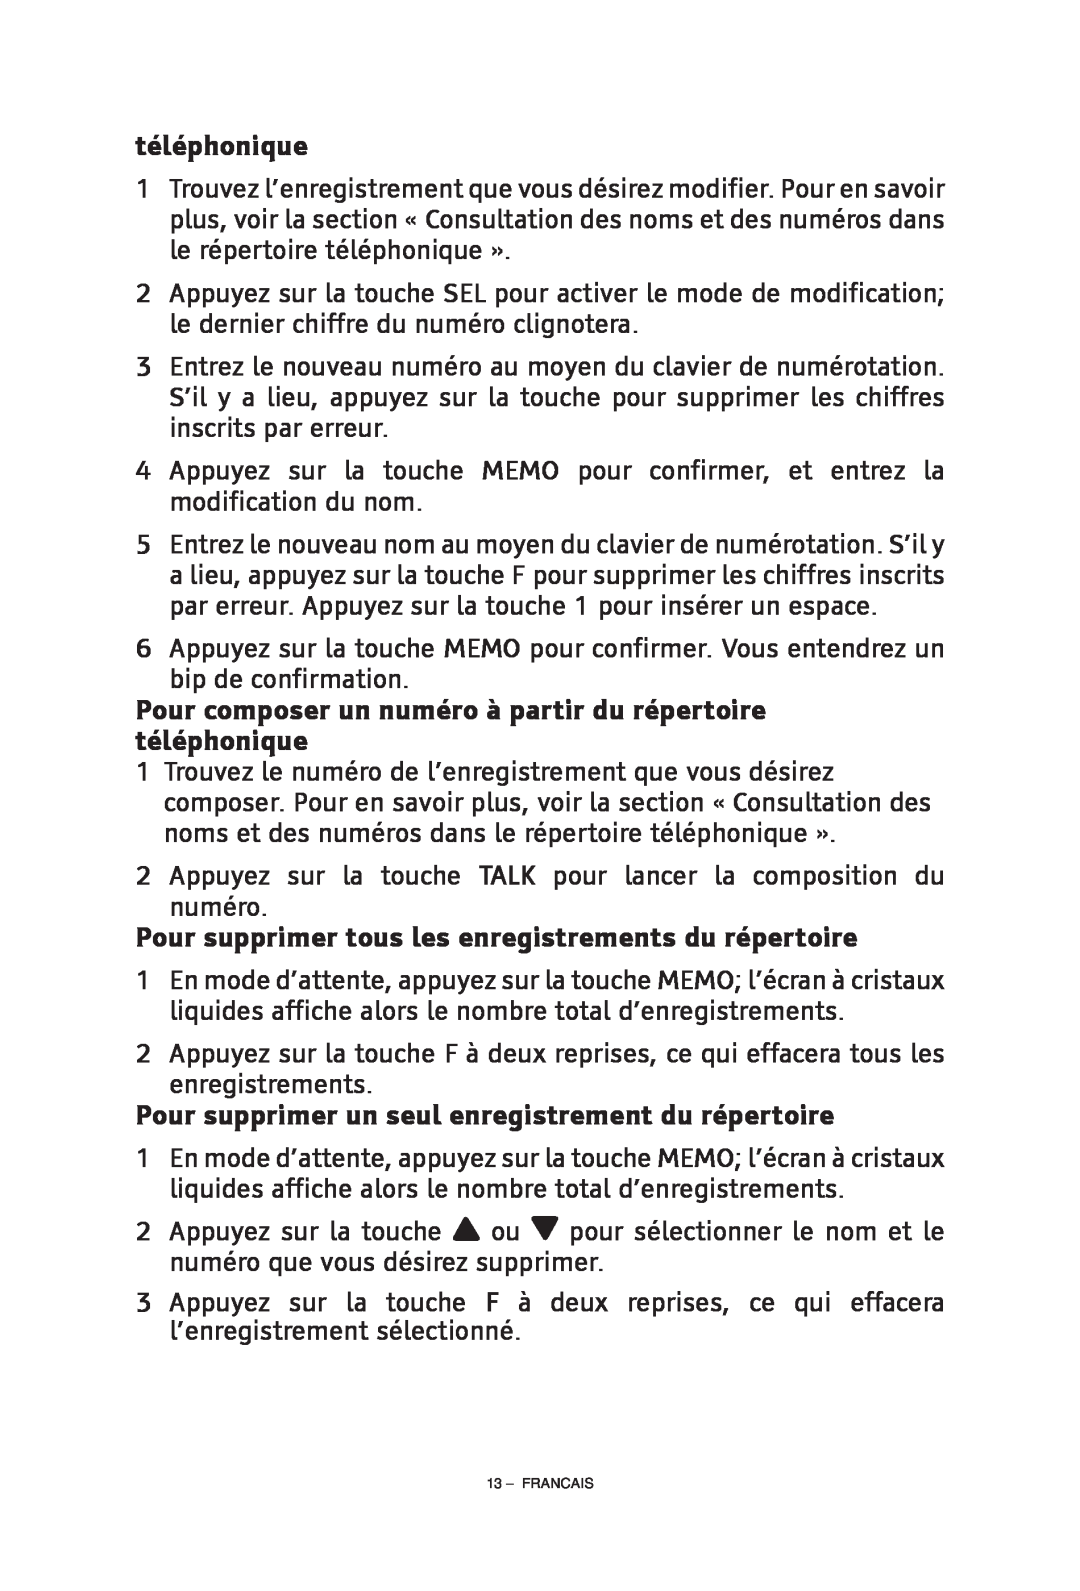 ClearSounds CS-A55 manual Pour composer un numéro à partir du répertoire téléphonique, Francais 